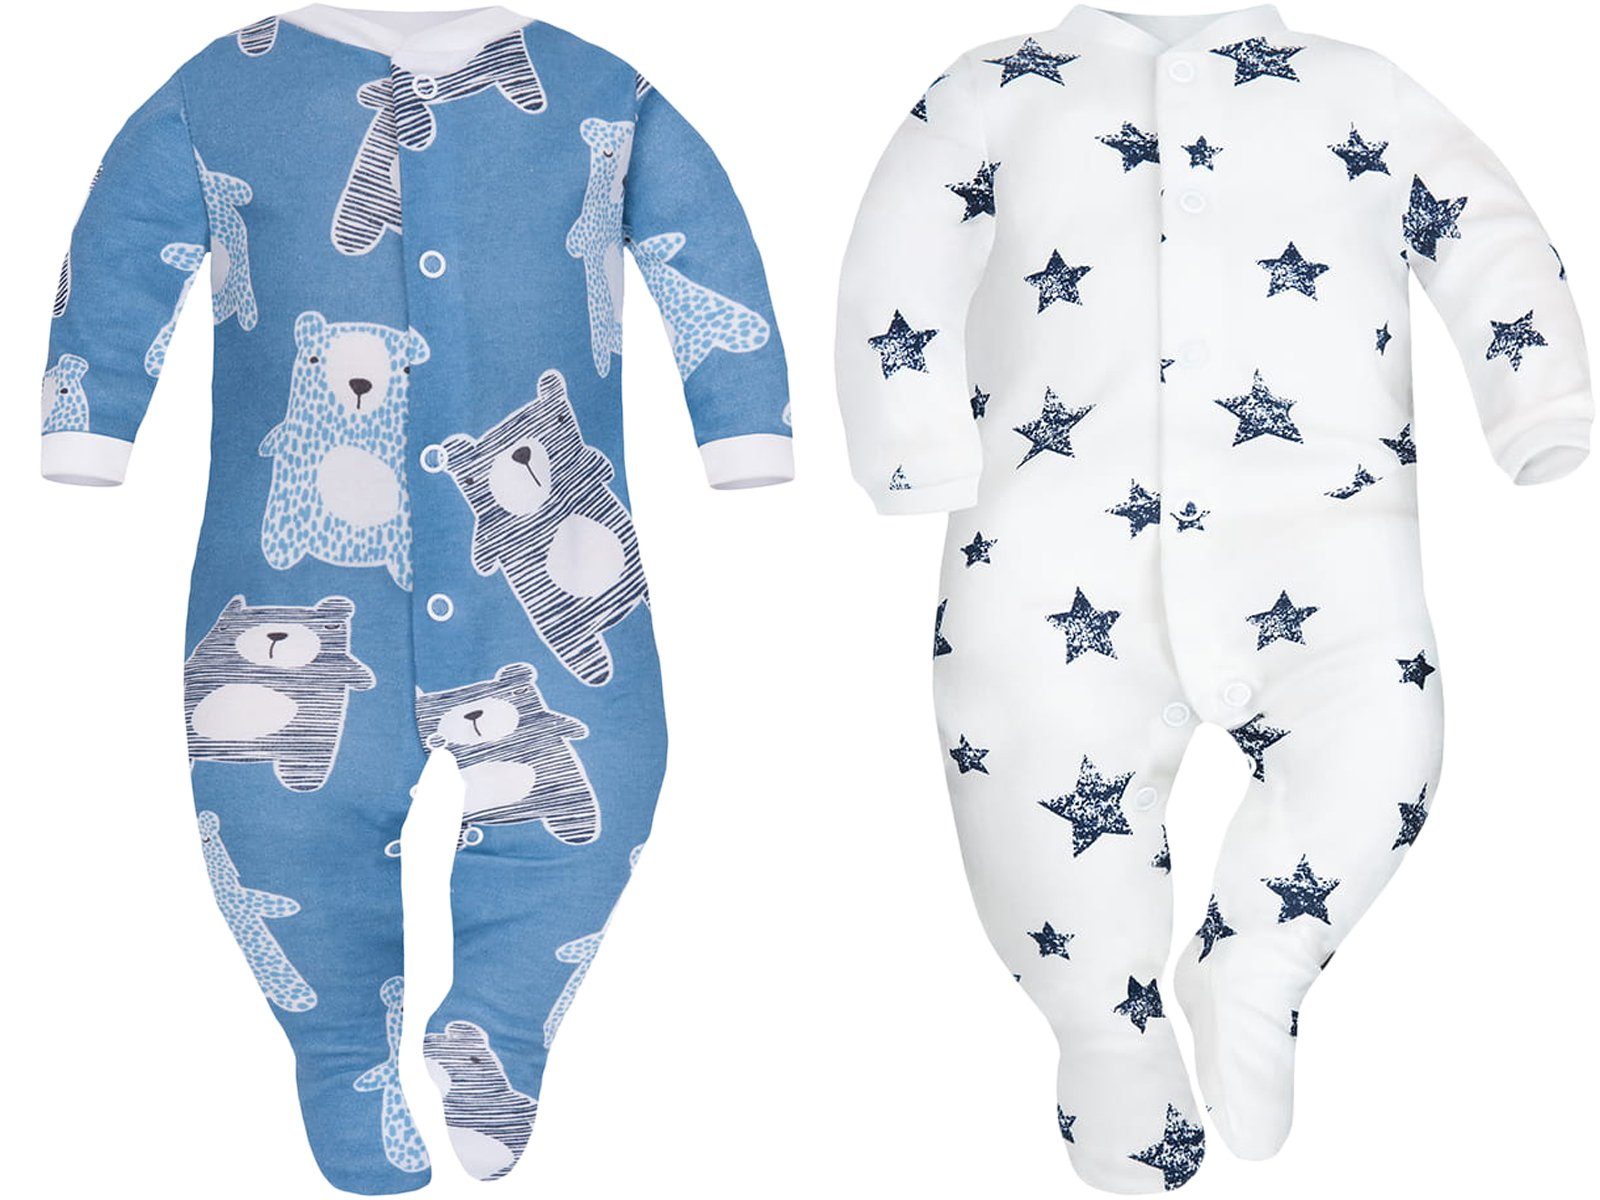 Divita-Mode Strampler Baby Strampler Baby Schlafanzug Schlafstrampler Schlafoveral 2er Pack (2-tlg) blau weiß